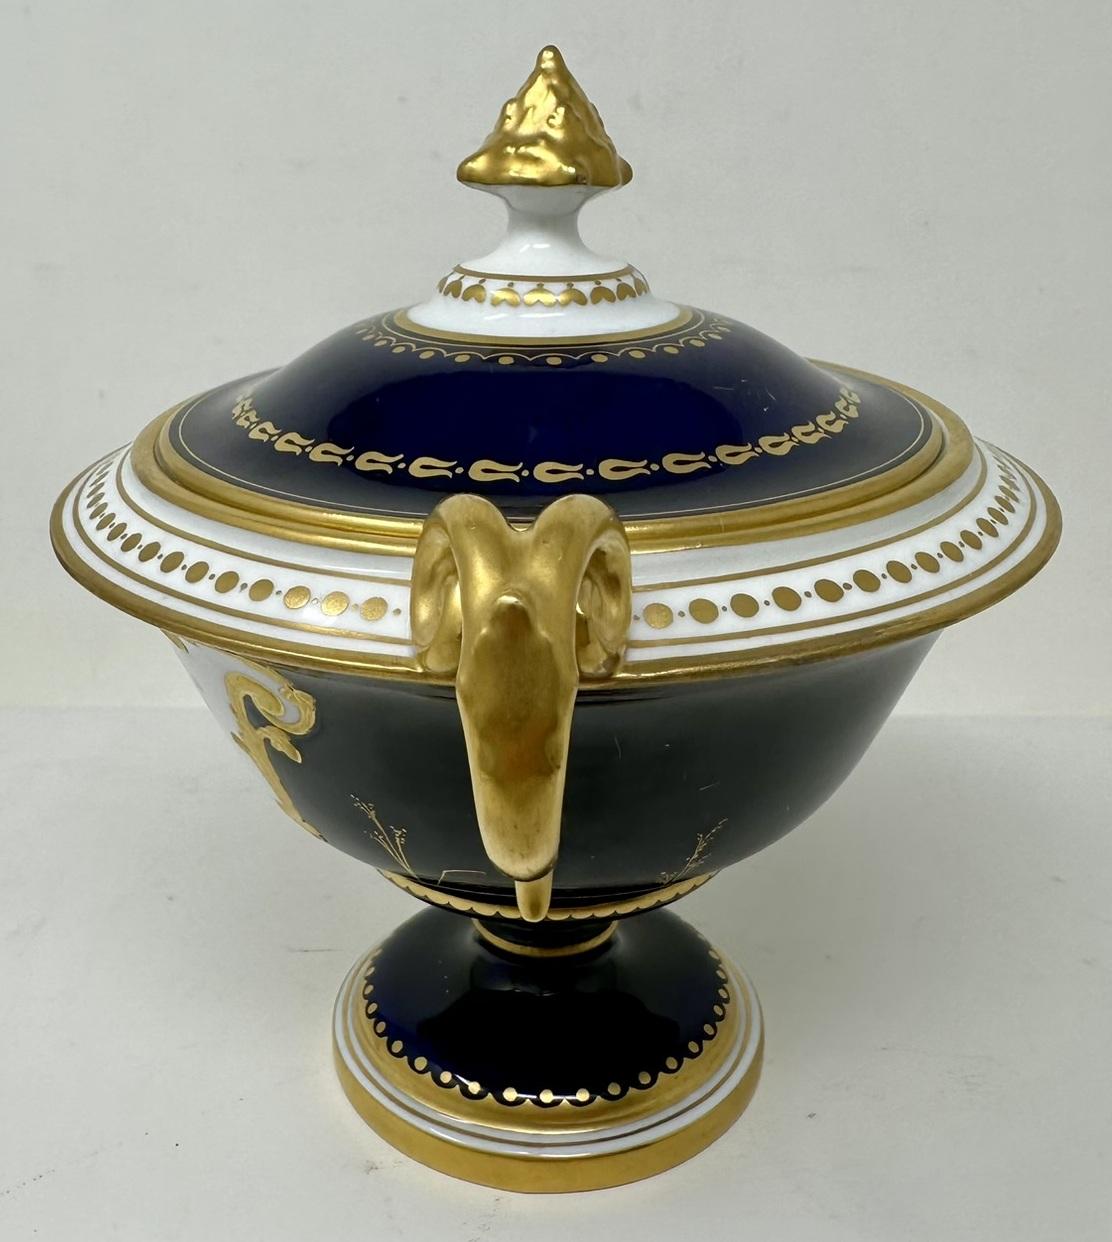 20th Century Antique English Crown Derby Urn Vase Centerpieces Albert Gregory Still Life 1913